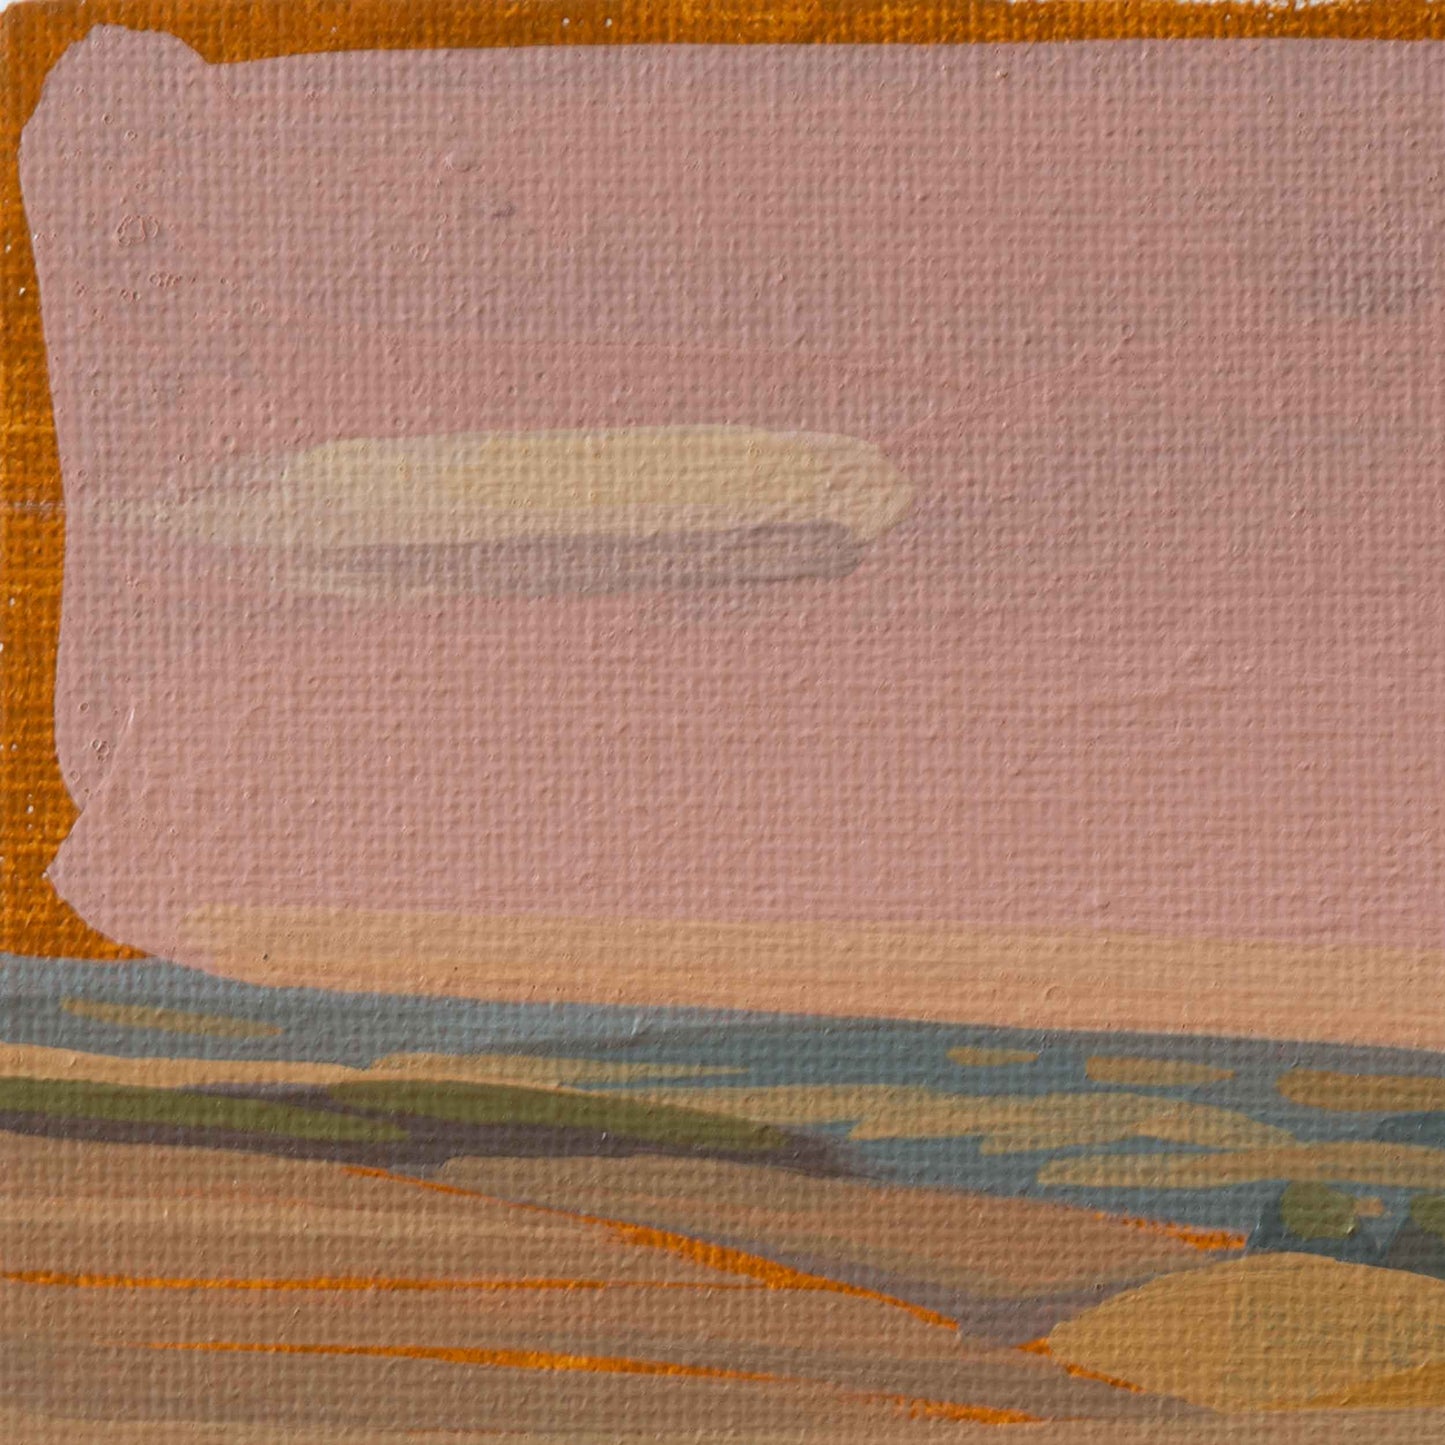 Eifel Landschaft, Unikat, Malerei, handgemaltes Einzelstück, 19 x 14,5 cm, mit Rahmen